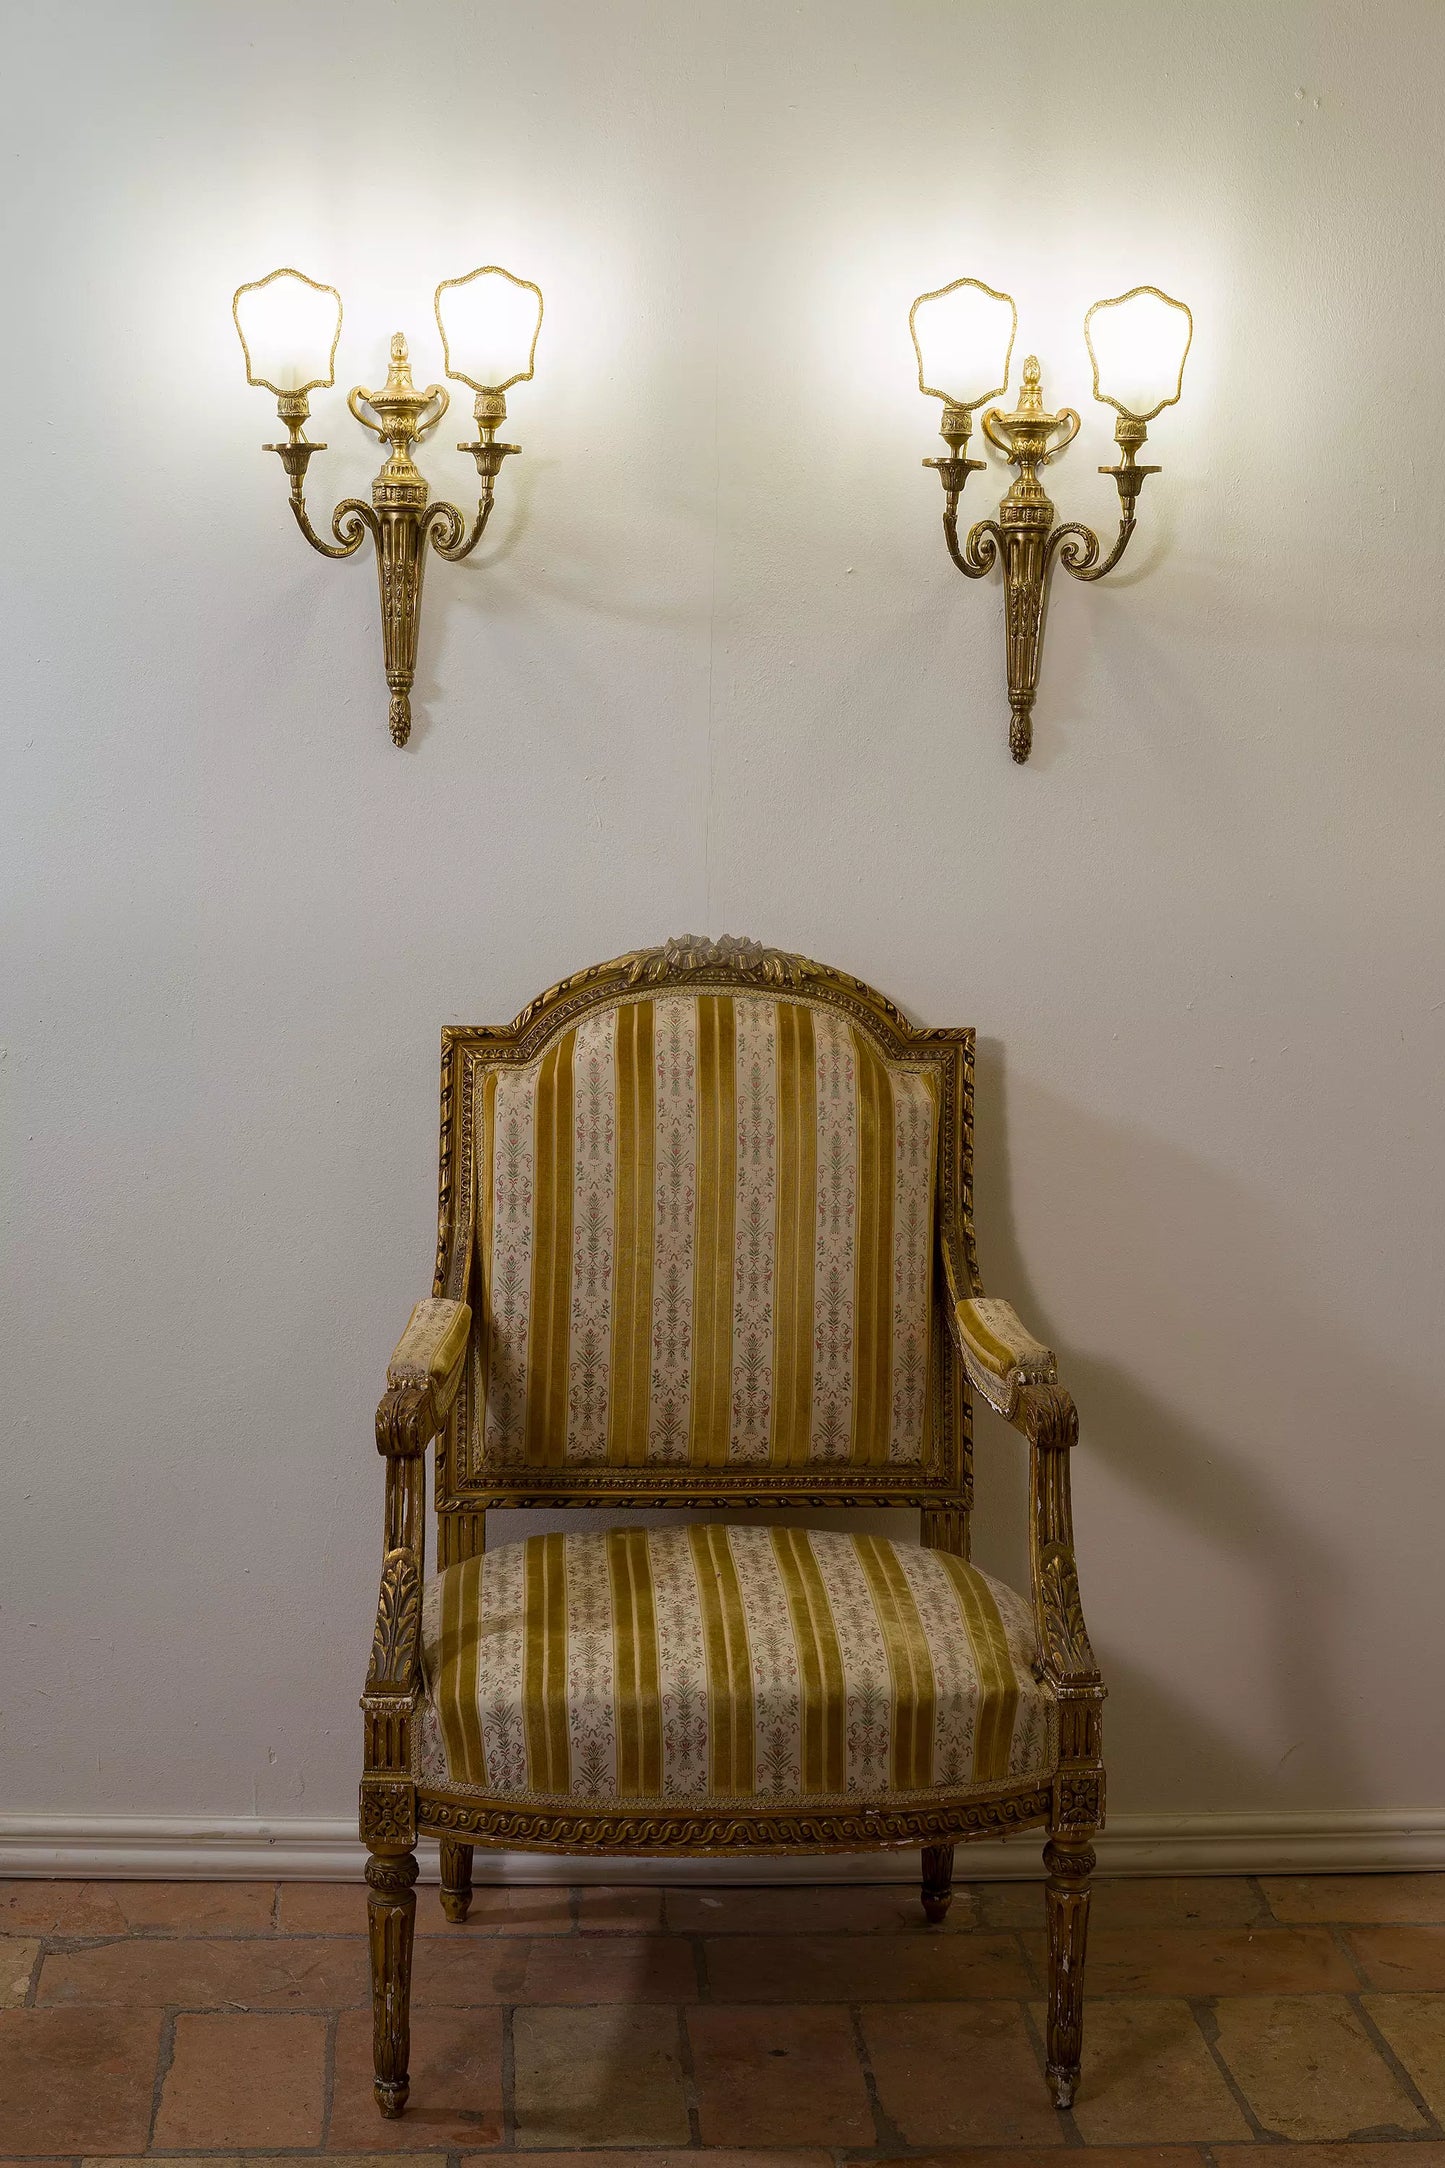 Lampade da parete con eleganti paralumi in pergamena - Atmosfera romantica. | Lo Stile Italiano